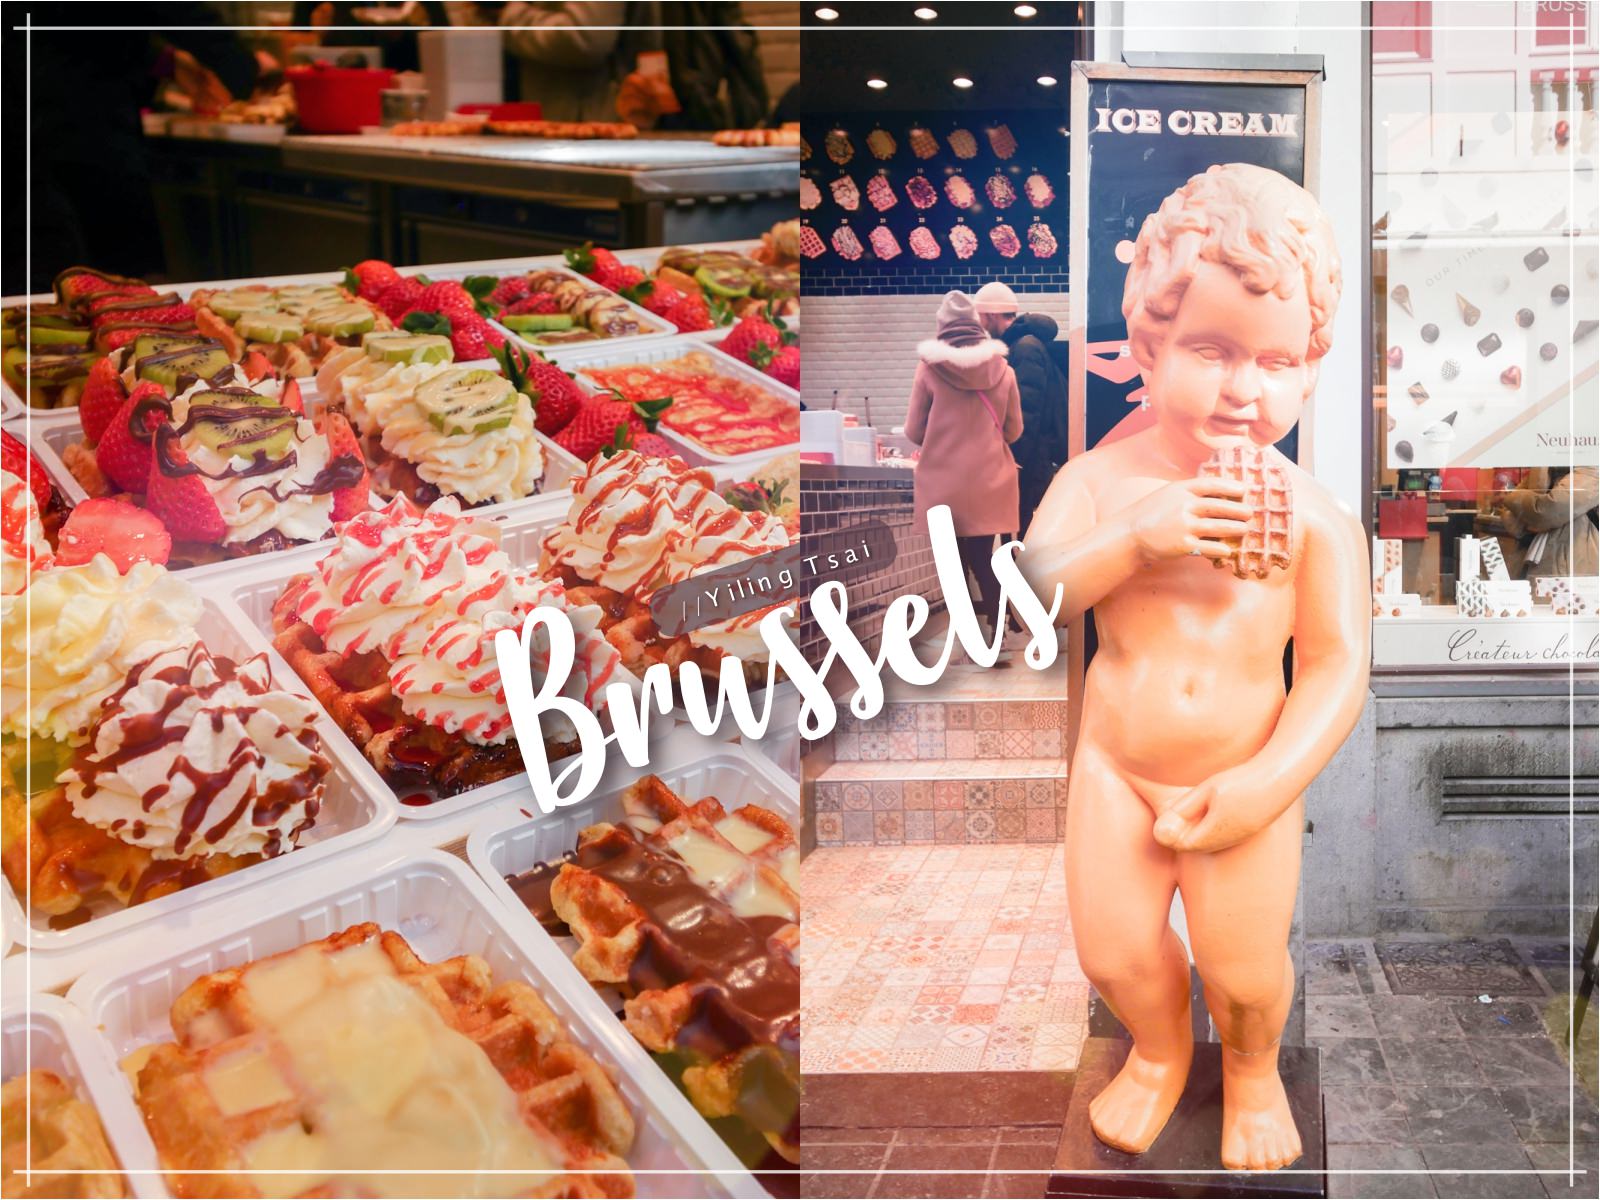 比利時布魯塞爾美食 Le Funambule 尿尿小童旁鬆餅小店